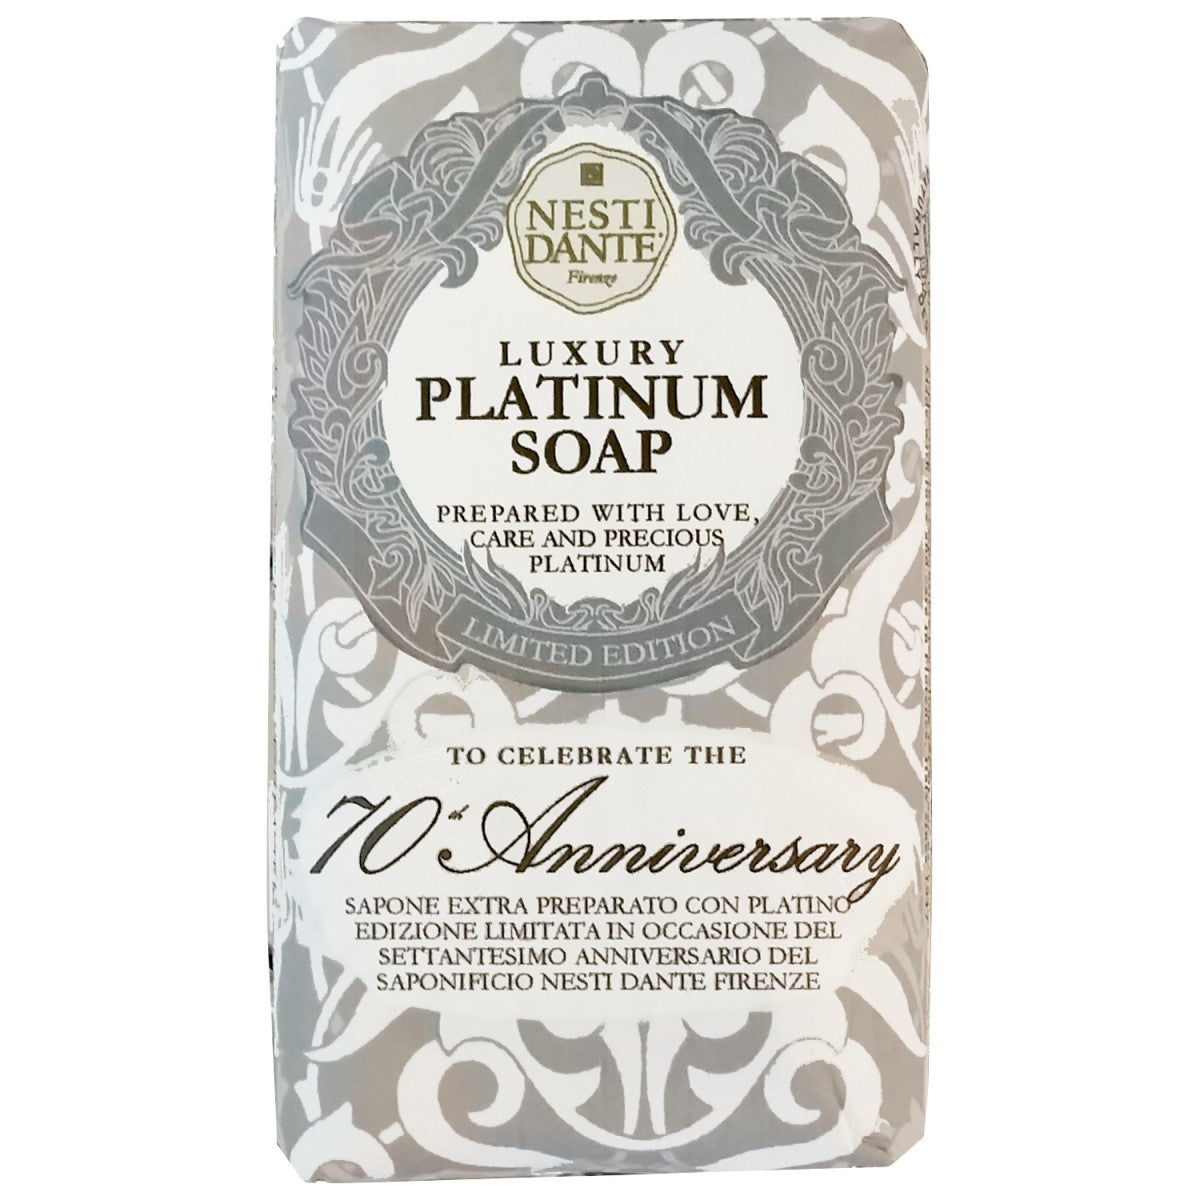 Primary Image of Luxury Platinum Soap (70th)